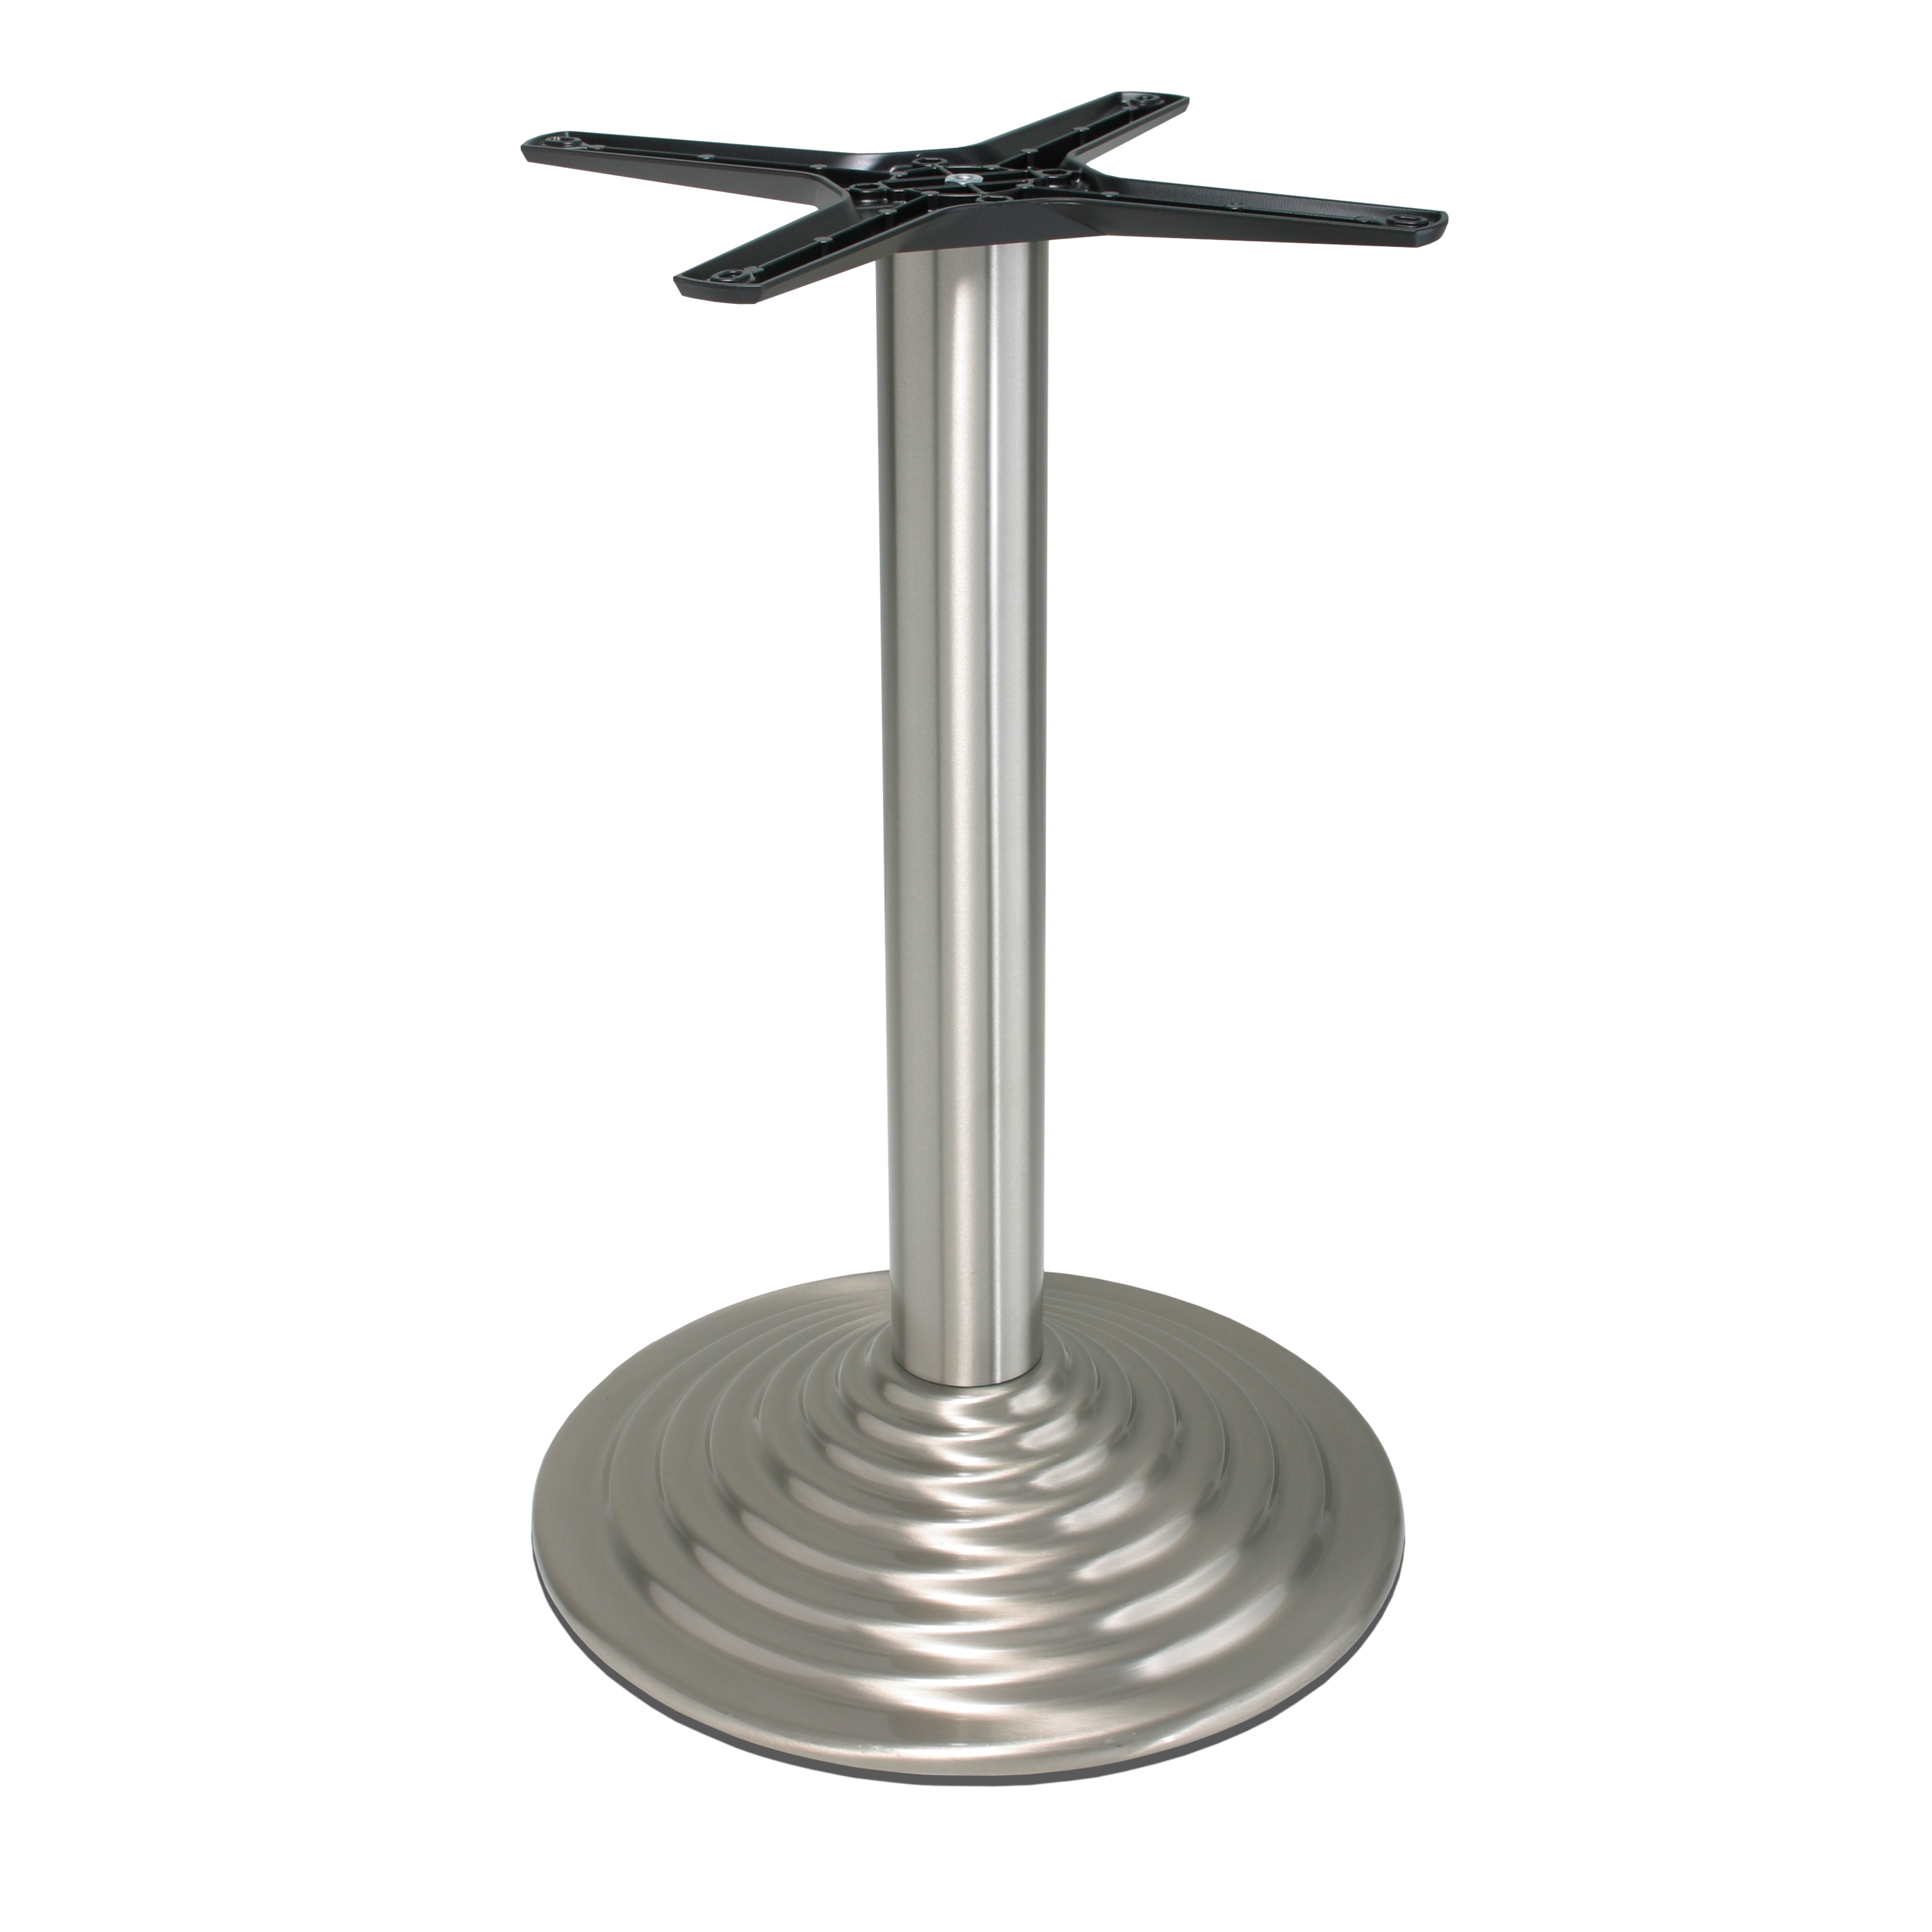 Tischgestell Edelstahl P450inox - rostfrei - satiniert - matt - runde Bodenplatte